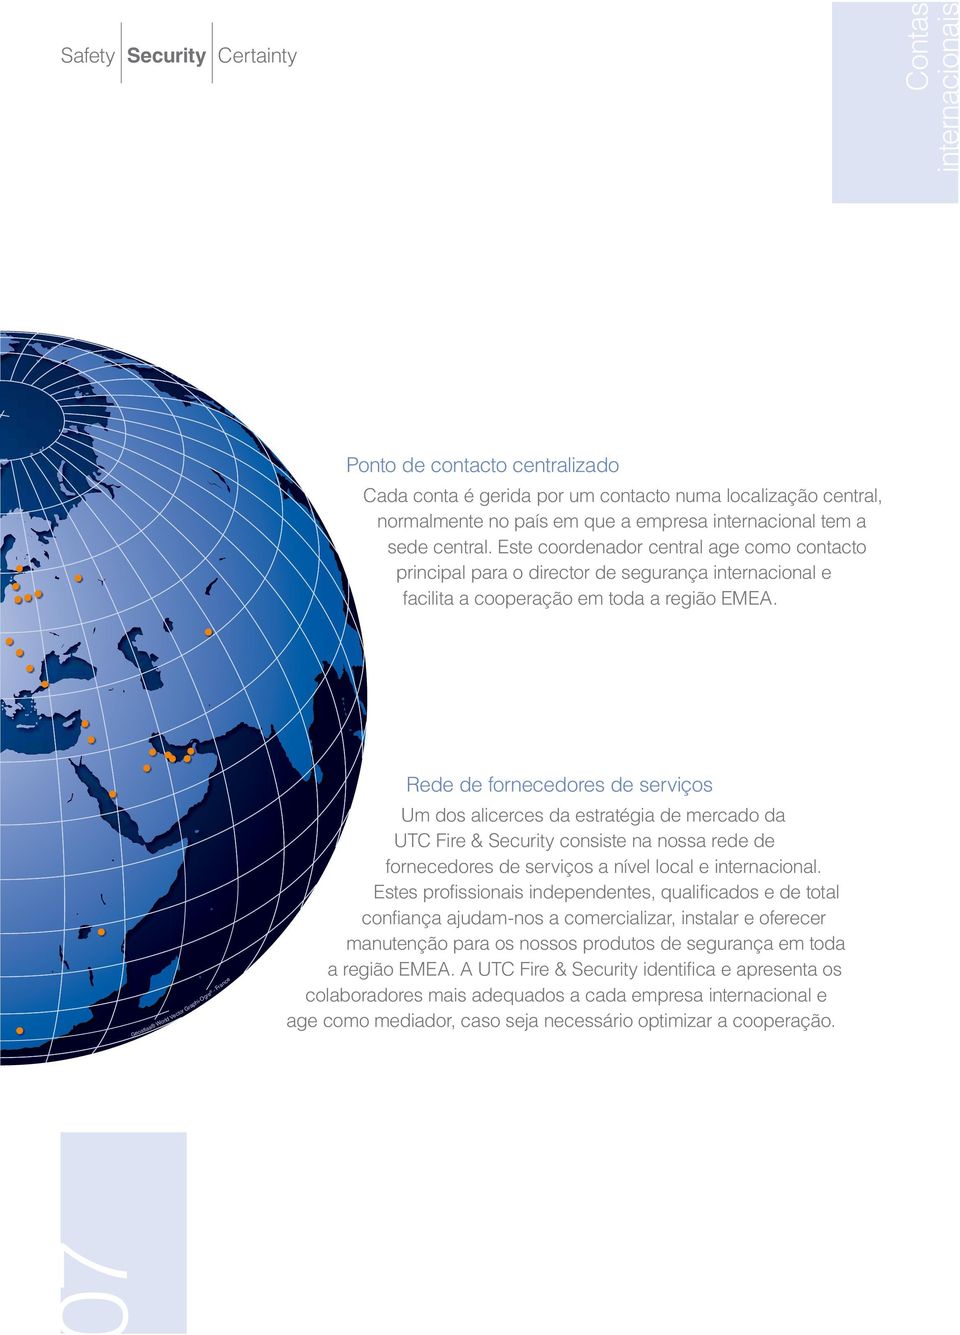 Geoatlas World Vector Graphi-Ogre - France Rede de fornecedores de serviços Um dos alicerces da estratégia de mercado da UTC Fire & Security consiste na nossa rede de fornecedores de serviços a nível